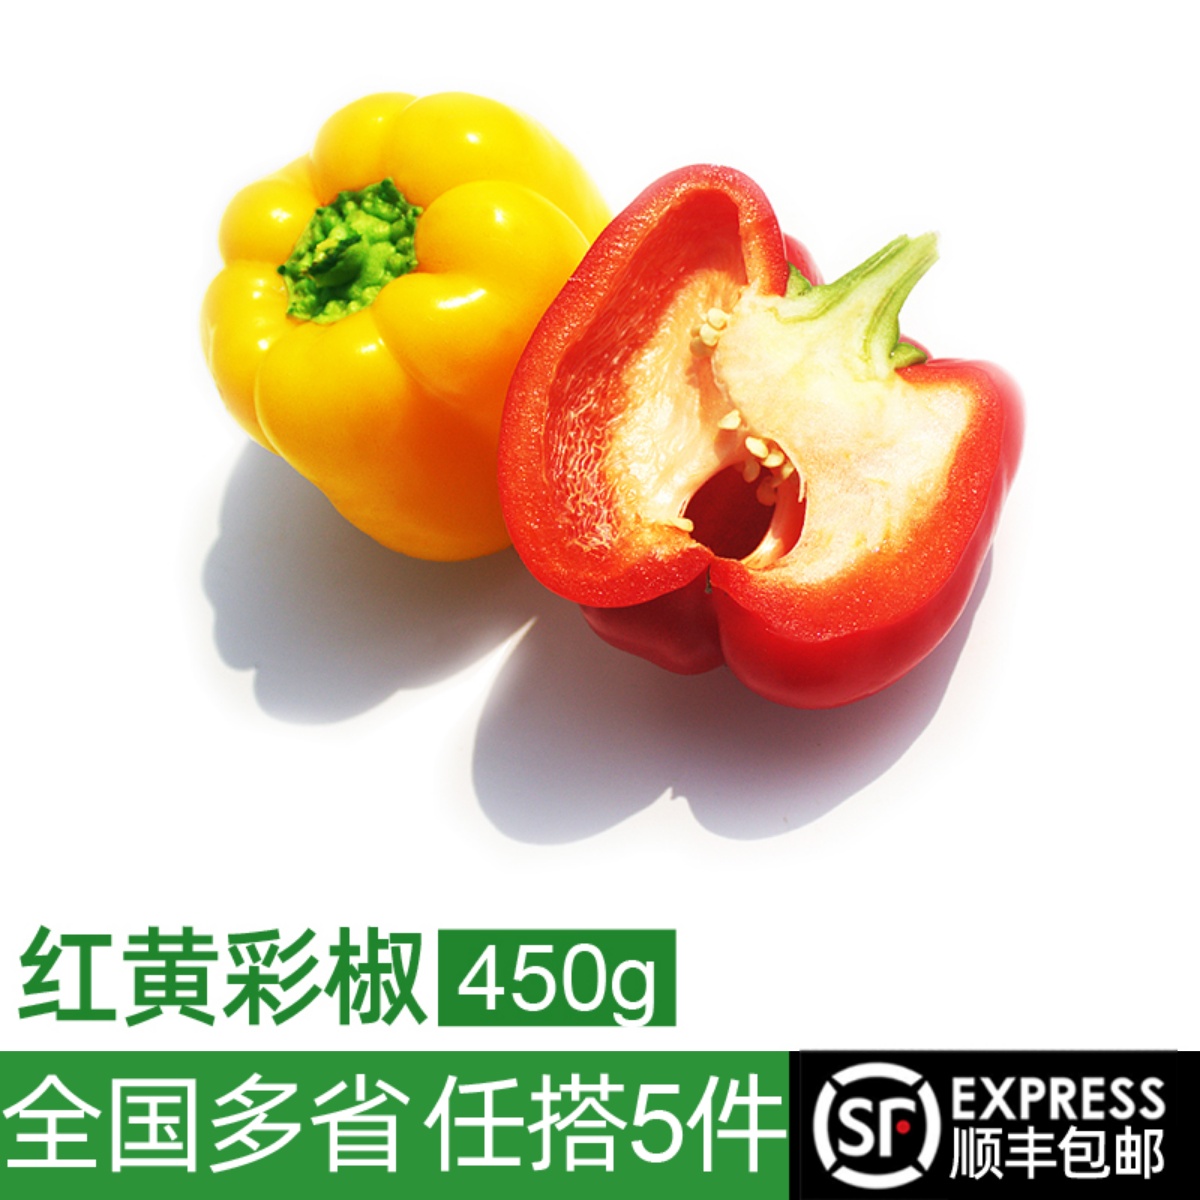 红黄彩椒450g 新鲜蔬菜灯笼椒方椒青椒沙拉食材圆椒甜辣椒